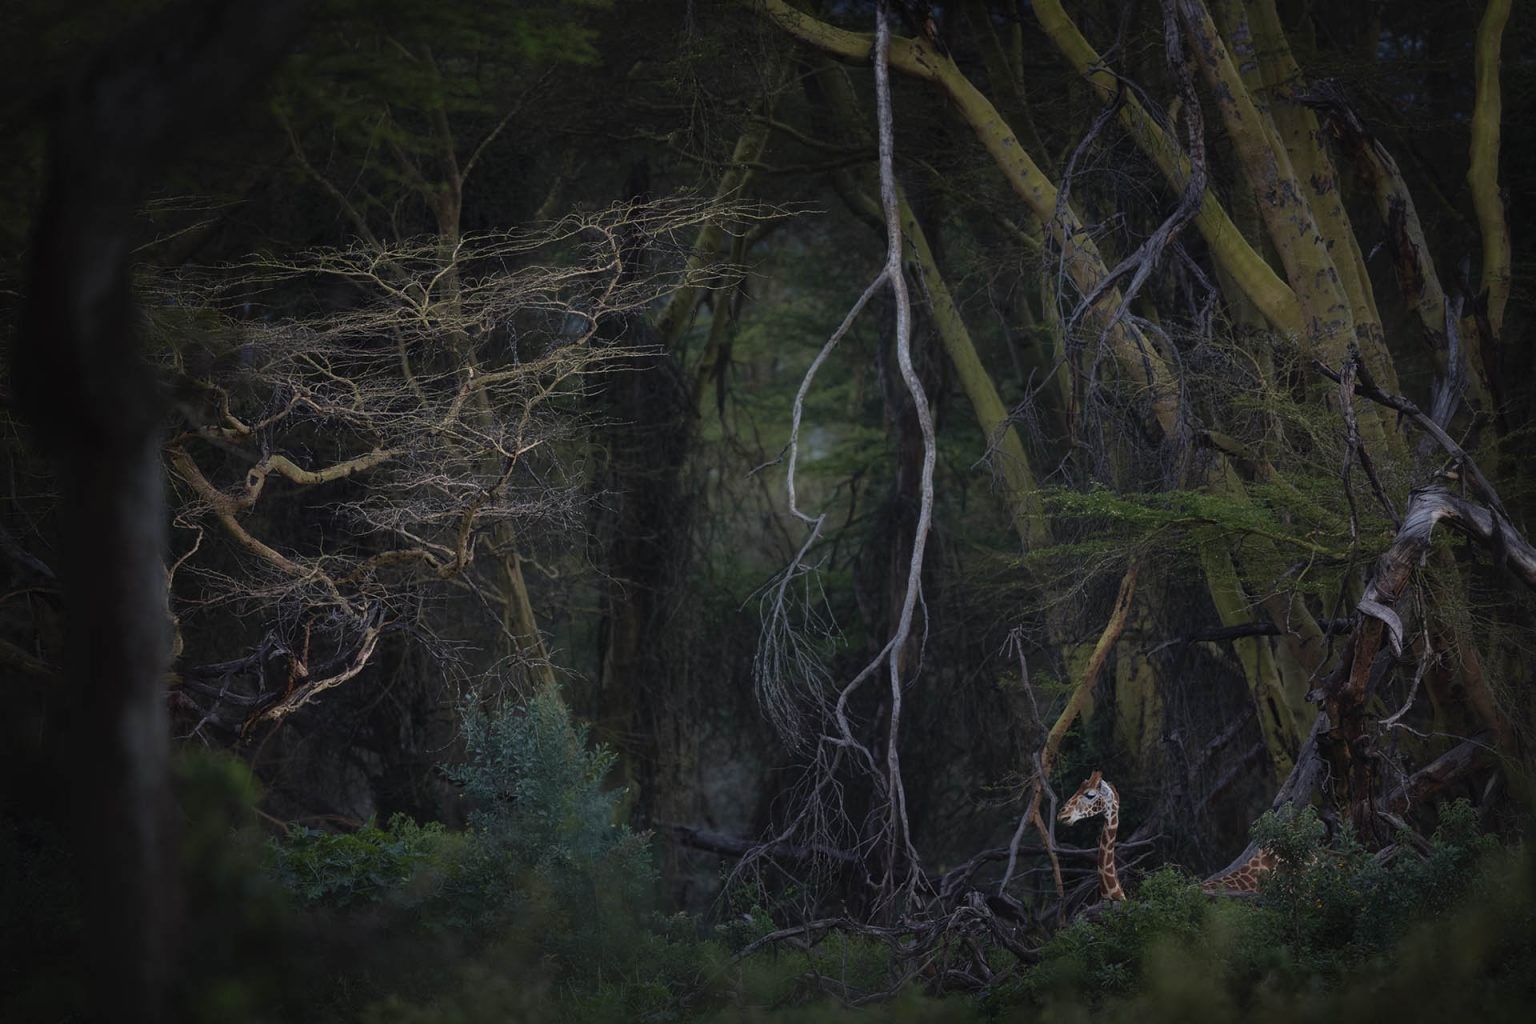 Главный победитель Nature Photographer of the Year и 1 место в категории Млекопитающие, 2020. Парк Юрского периода. Национальный парк Озеро Накуру, Кения. Автор Роберто Марчегиани